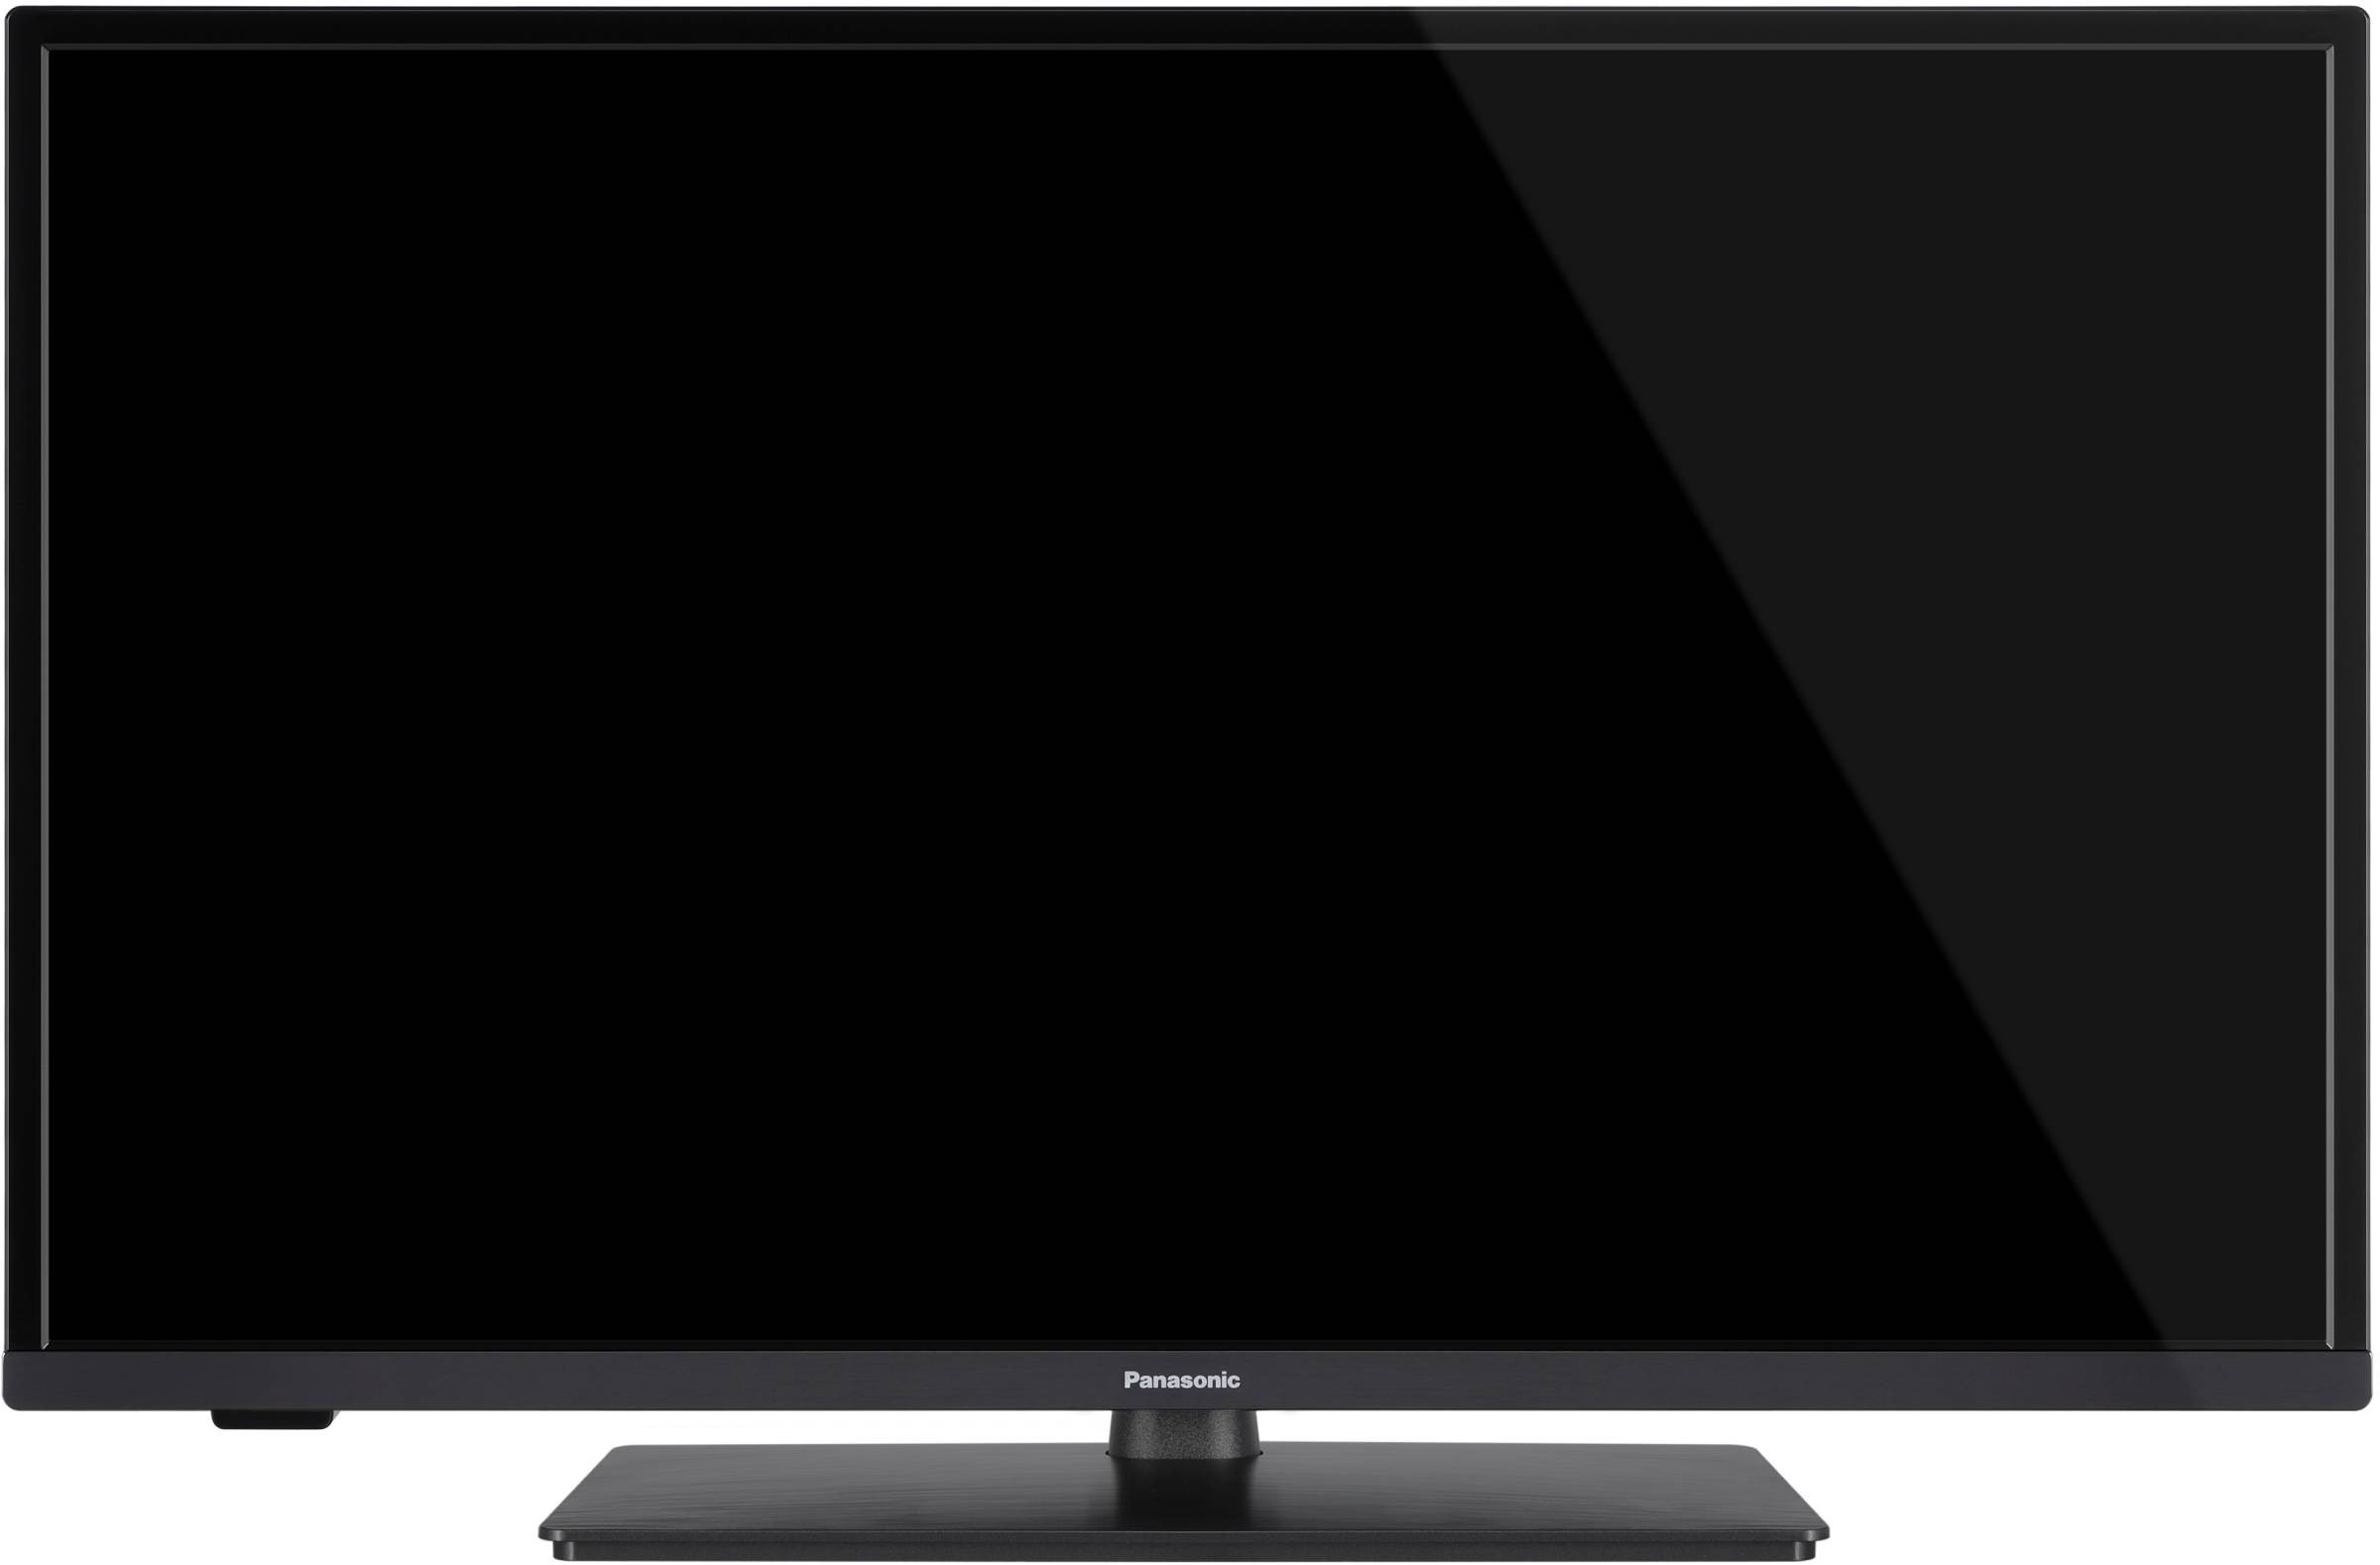 PANASONIC TV LED 60 cm  - TX-24MS480E